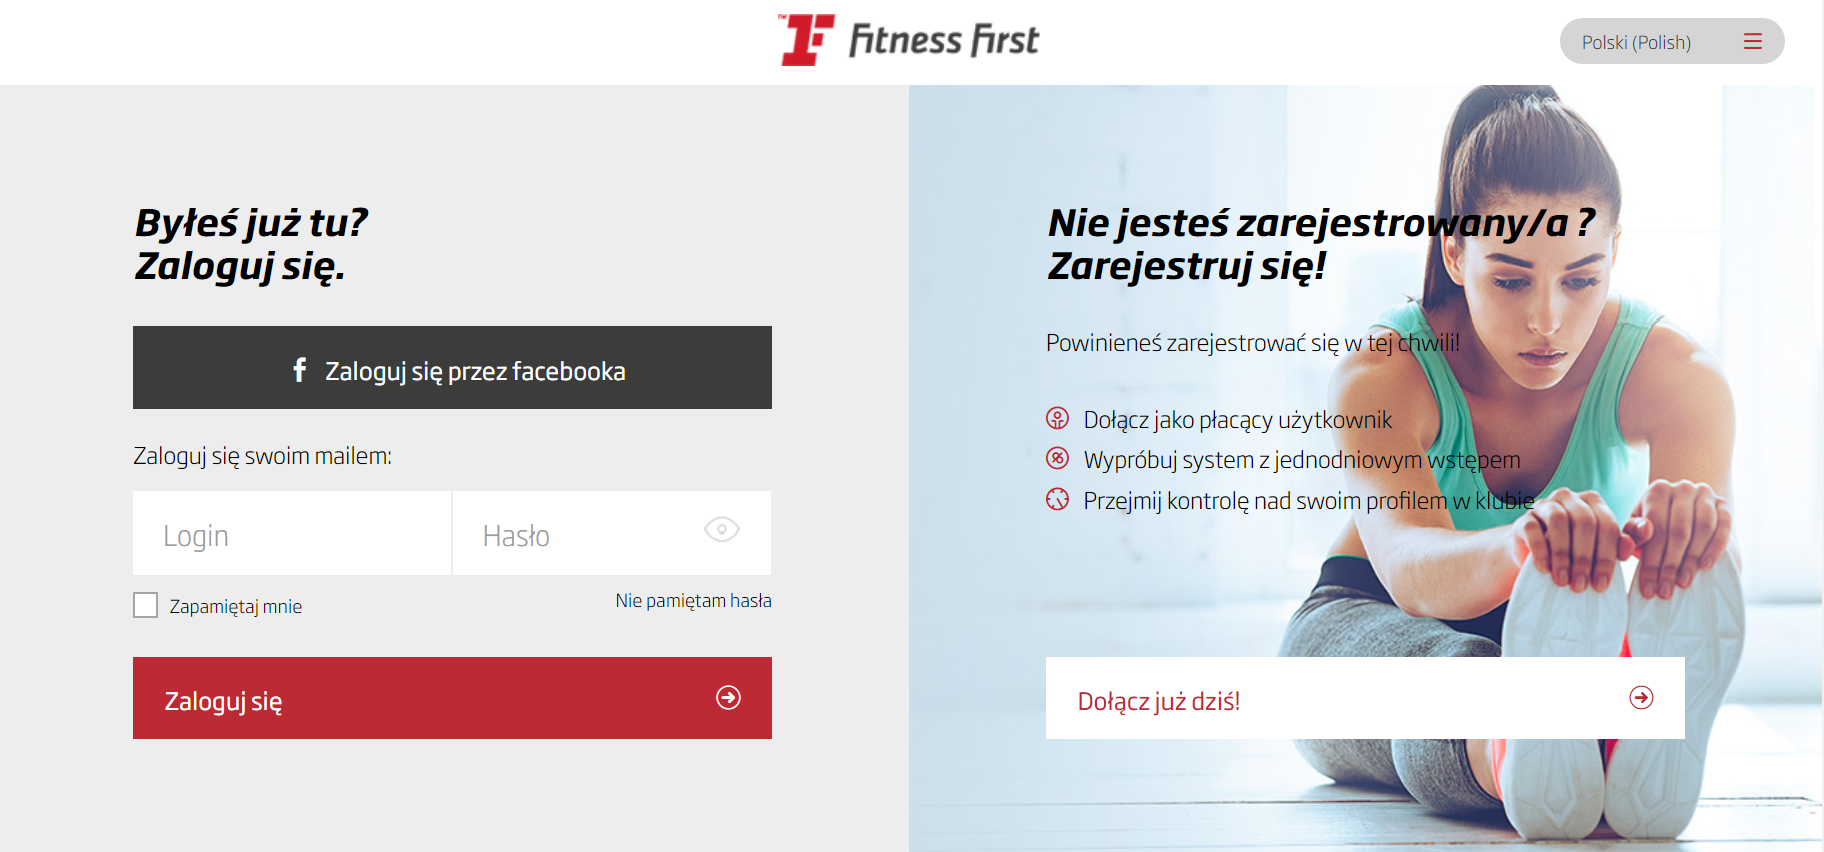 marketing klubu fitness strona internetowa